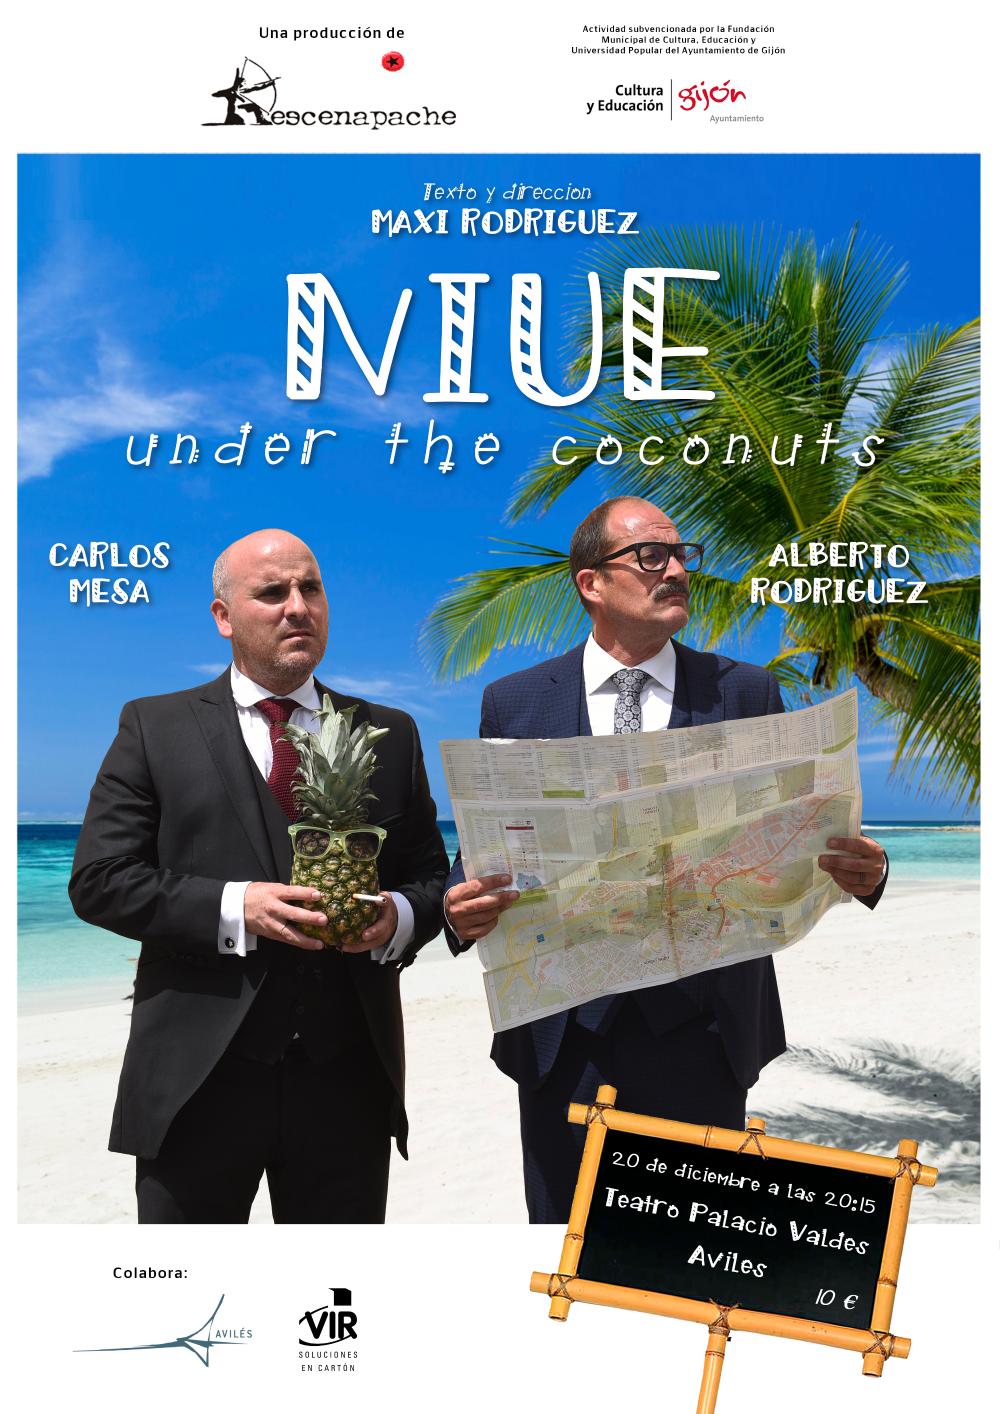 #LosEstrenosDelPalacioValdés ofrece el humor de Maxi Rodríguez con 'Niue under the coconuts'